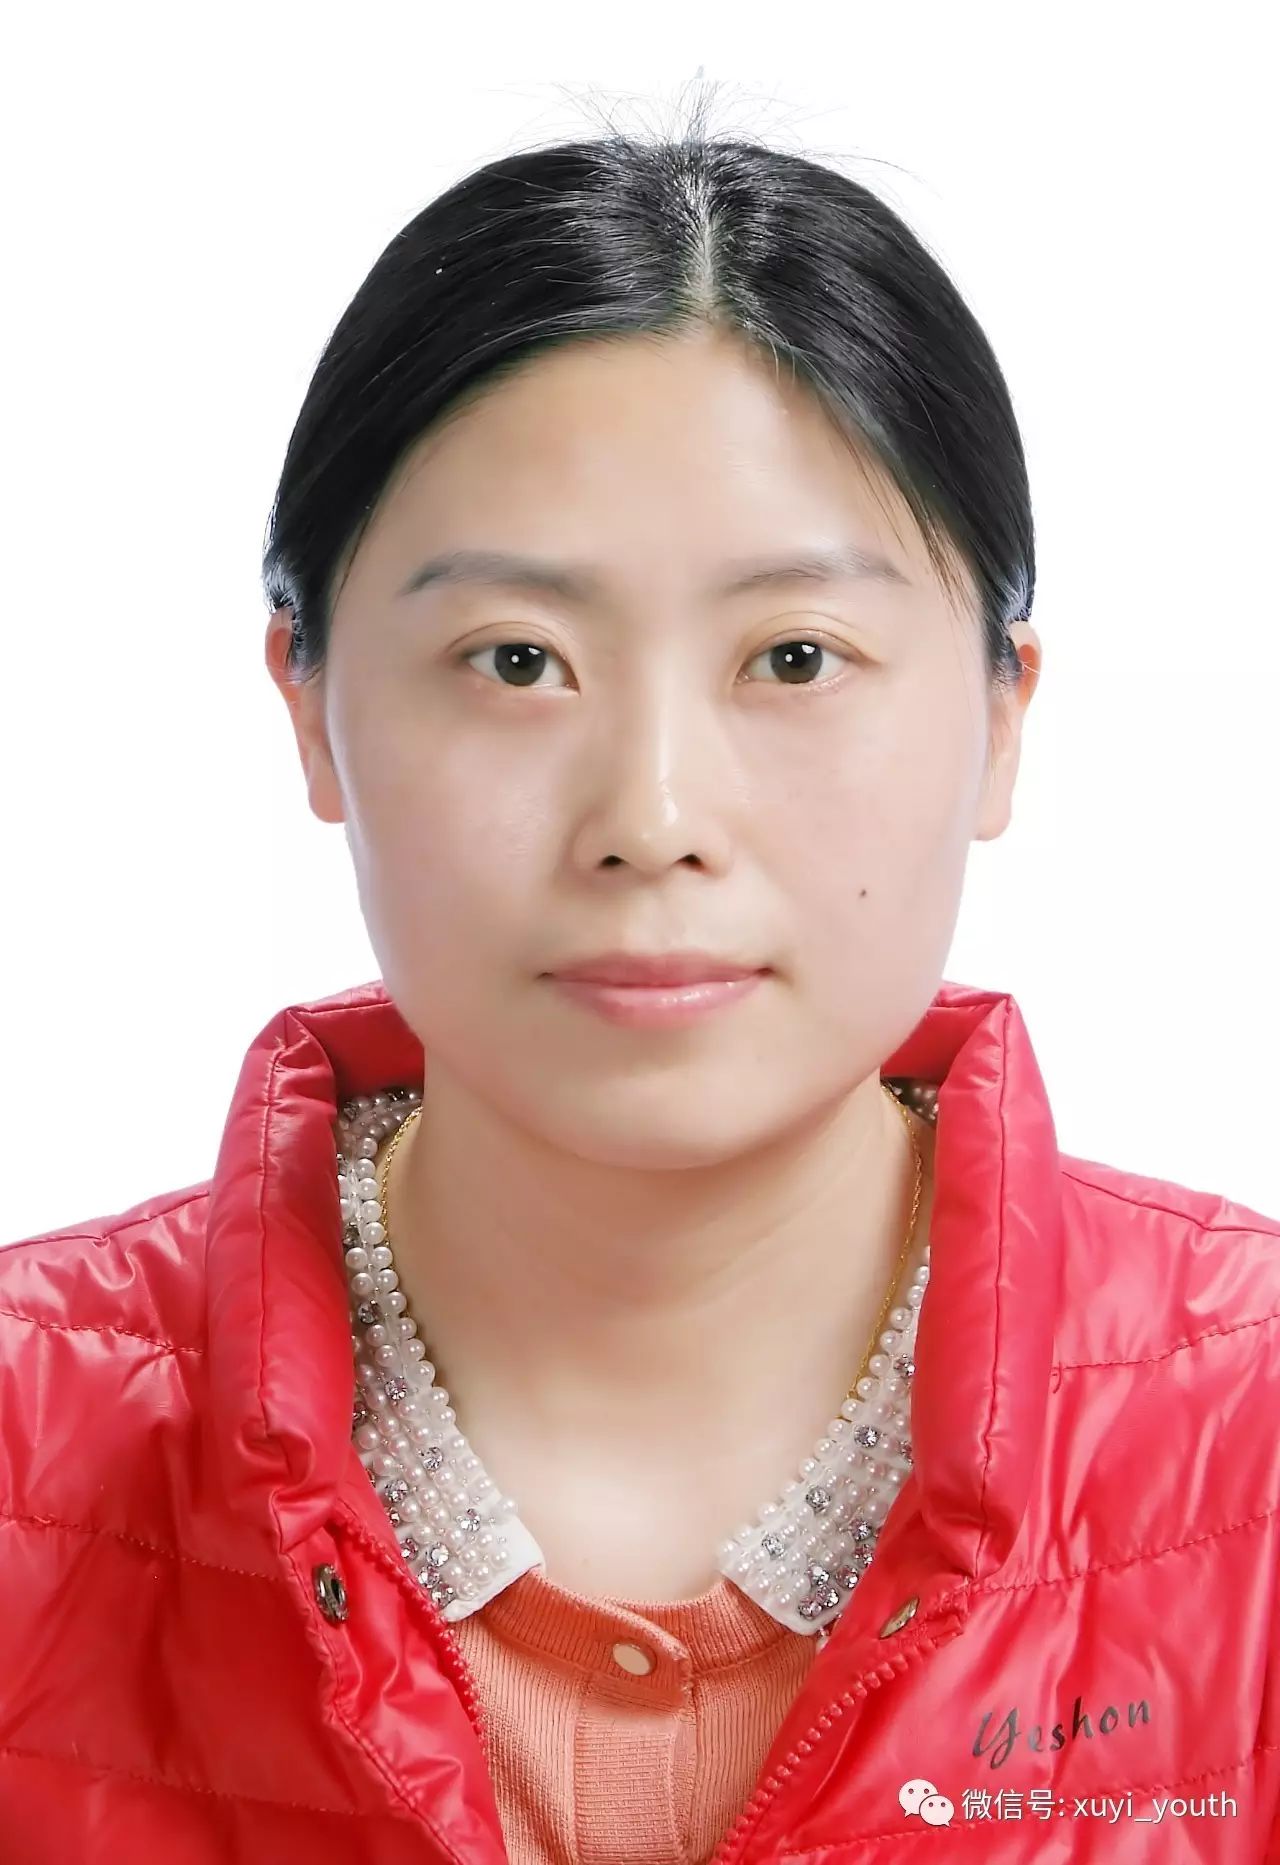 吴艳 女,1982年5月出生,中共党员,本科学历,现任盱眙县广播电视台团